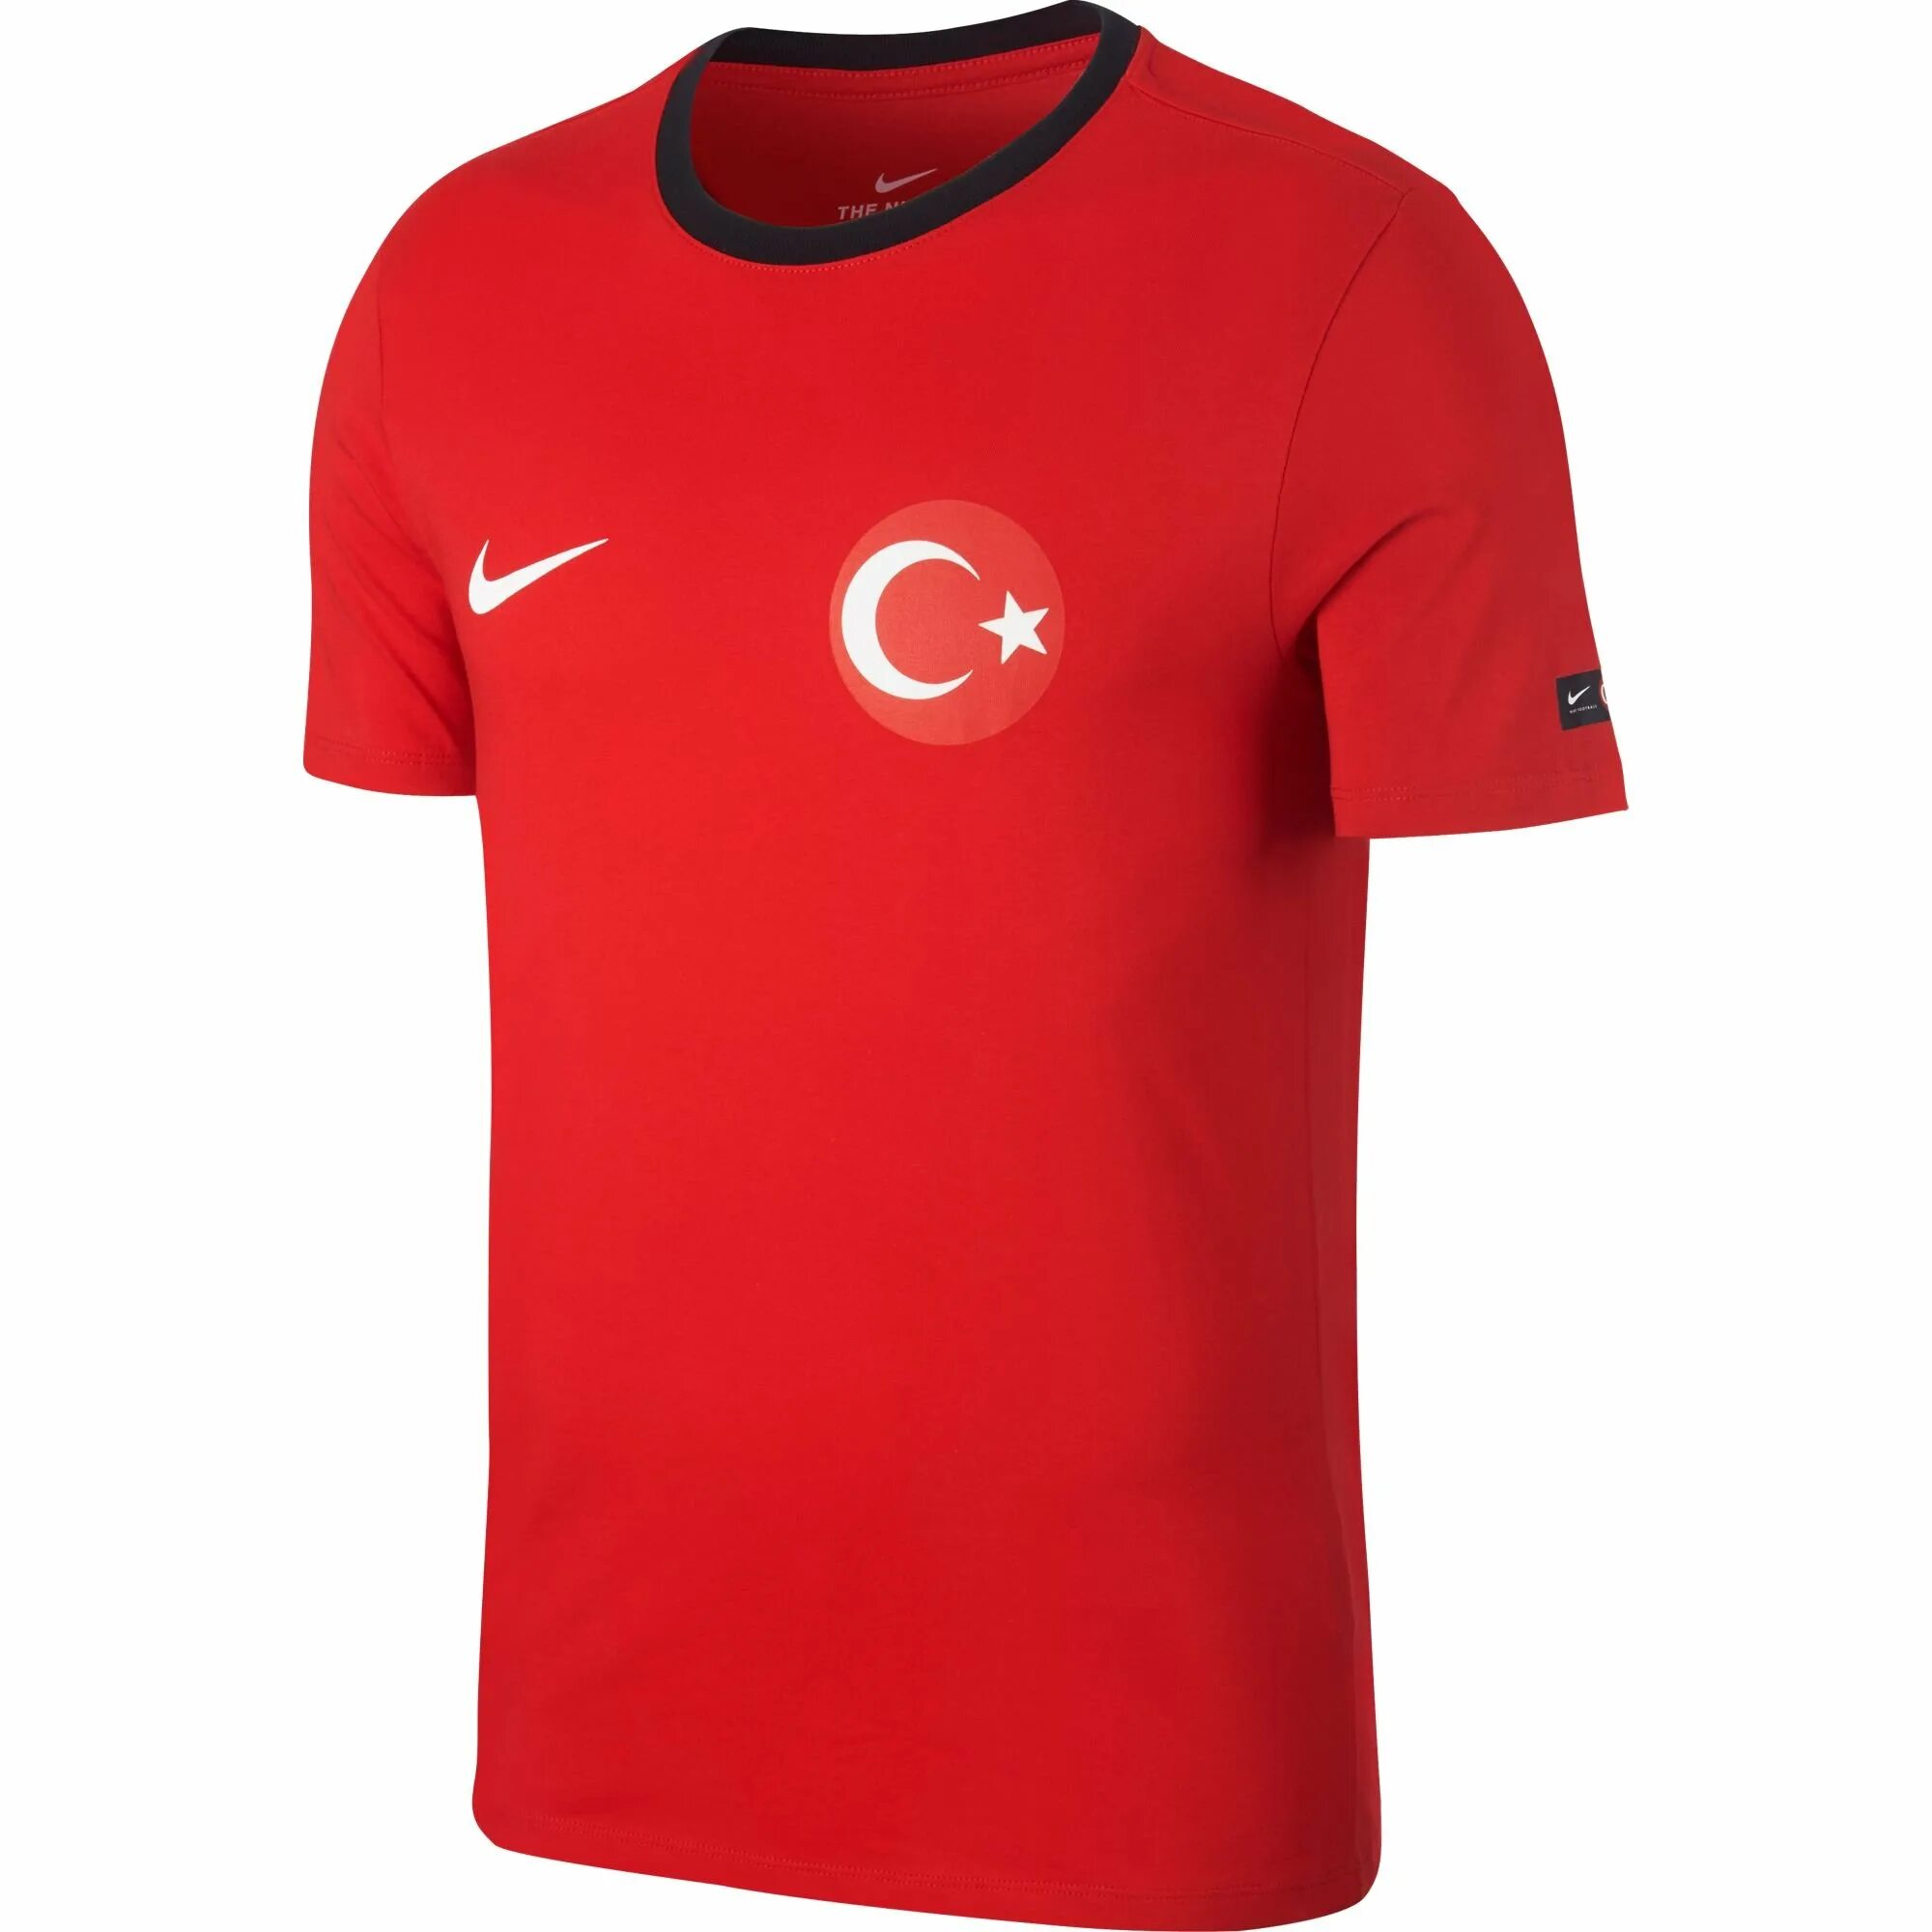 Найк турция сайт. Nike Turkey Dri Fit футболка. Nike Dri Fit Turkey. Турецкие футболки. Футболка Turkey мужская.